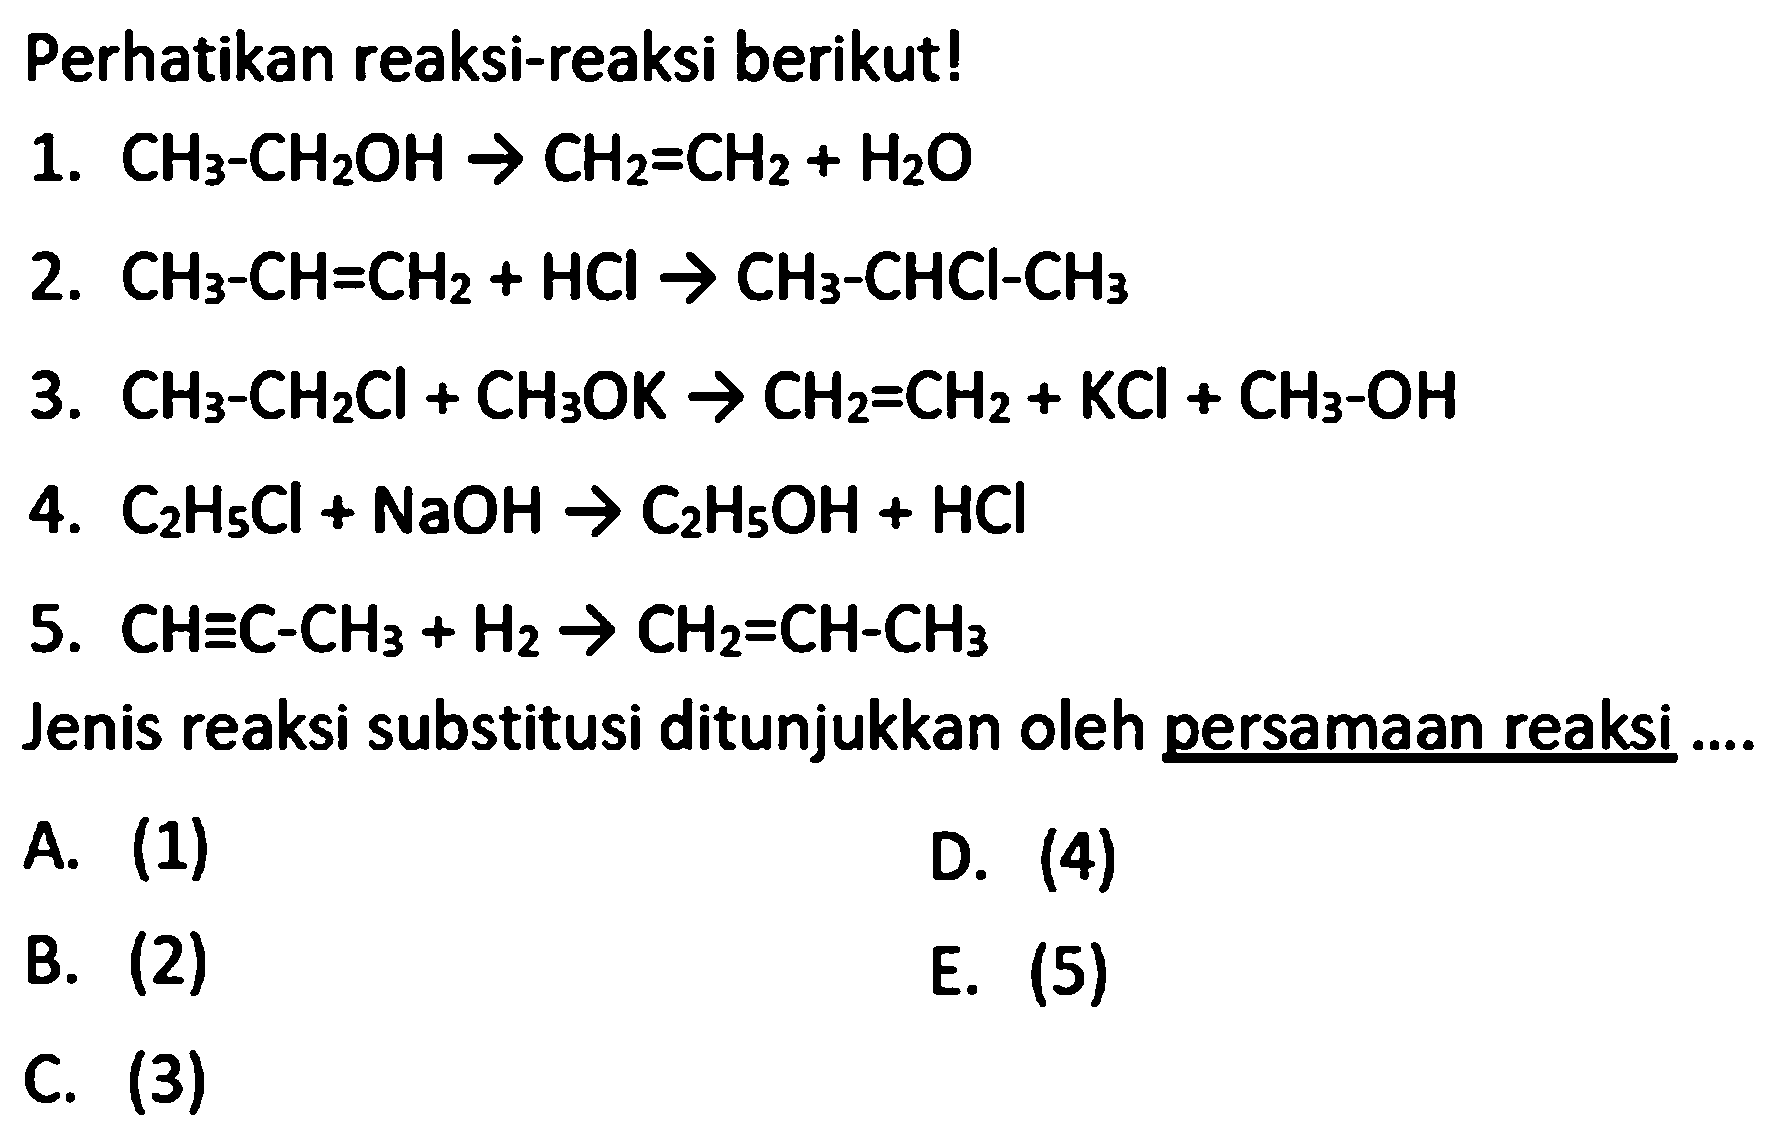 Perhatikan reaksi-reaksi berikut! 
1. CH3-CH2OH -> CH2=CH2 + H2O 
2. CH3-CH=CH2 + HCI -> CH3-CHCI-CH3 
3. CH3-CH2Cl + CH3OK -> CH2=CH2 + KCI + CH3-OH 
4. C2H5Cl + NaOH -> C2H5OH + HCI 
5. CH=C-CH3 + H2 -> CH2=CH-CH3
Jenis reaksi substitusi ditunjukkan oleh persamaan reaksi A. (1) D. (4) B. (2) E. (5) C. (3)